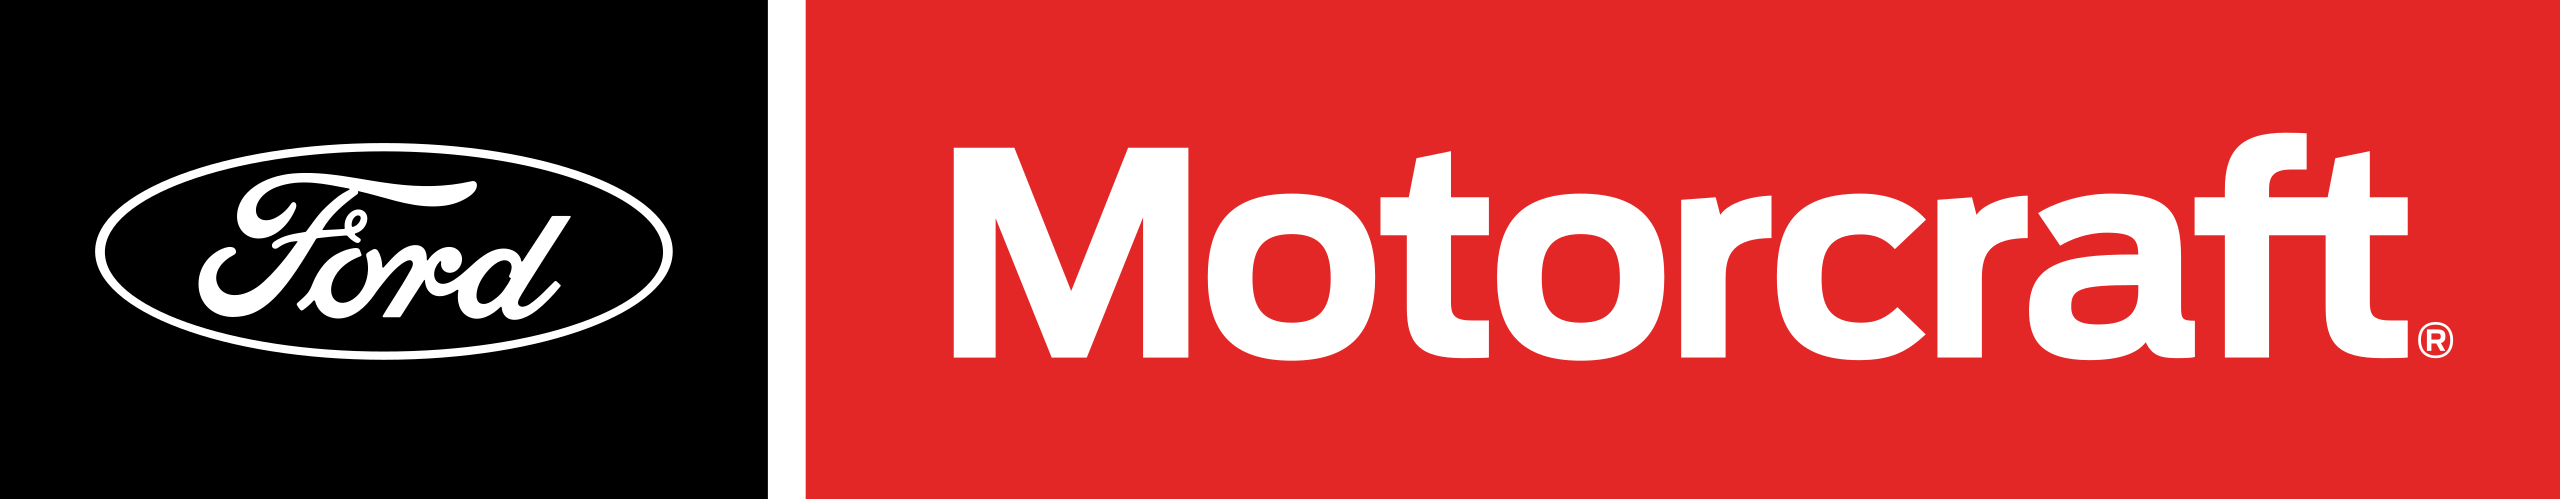 Логотип Motorcraft